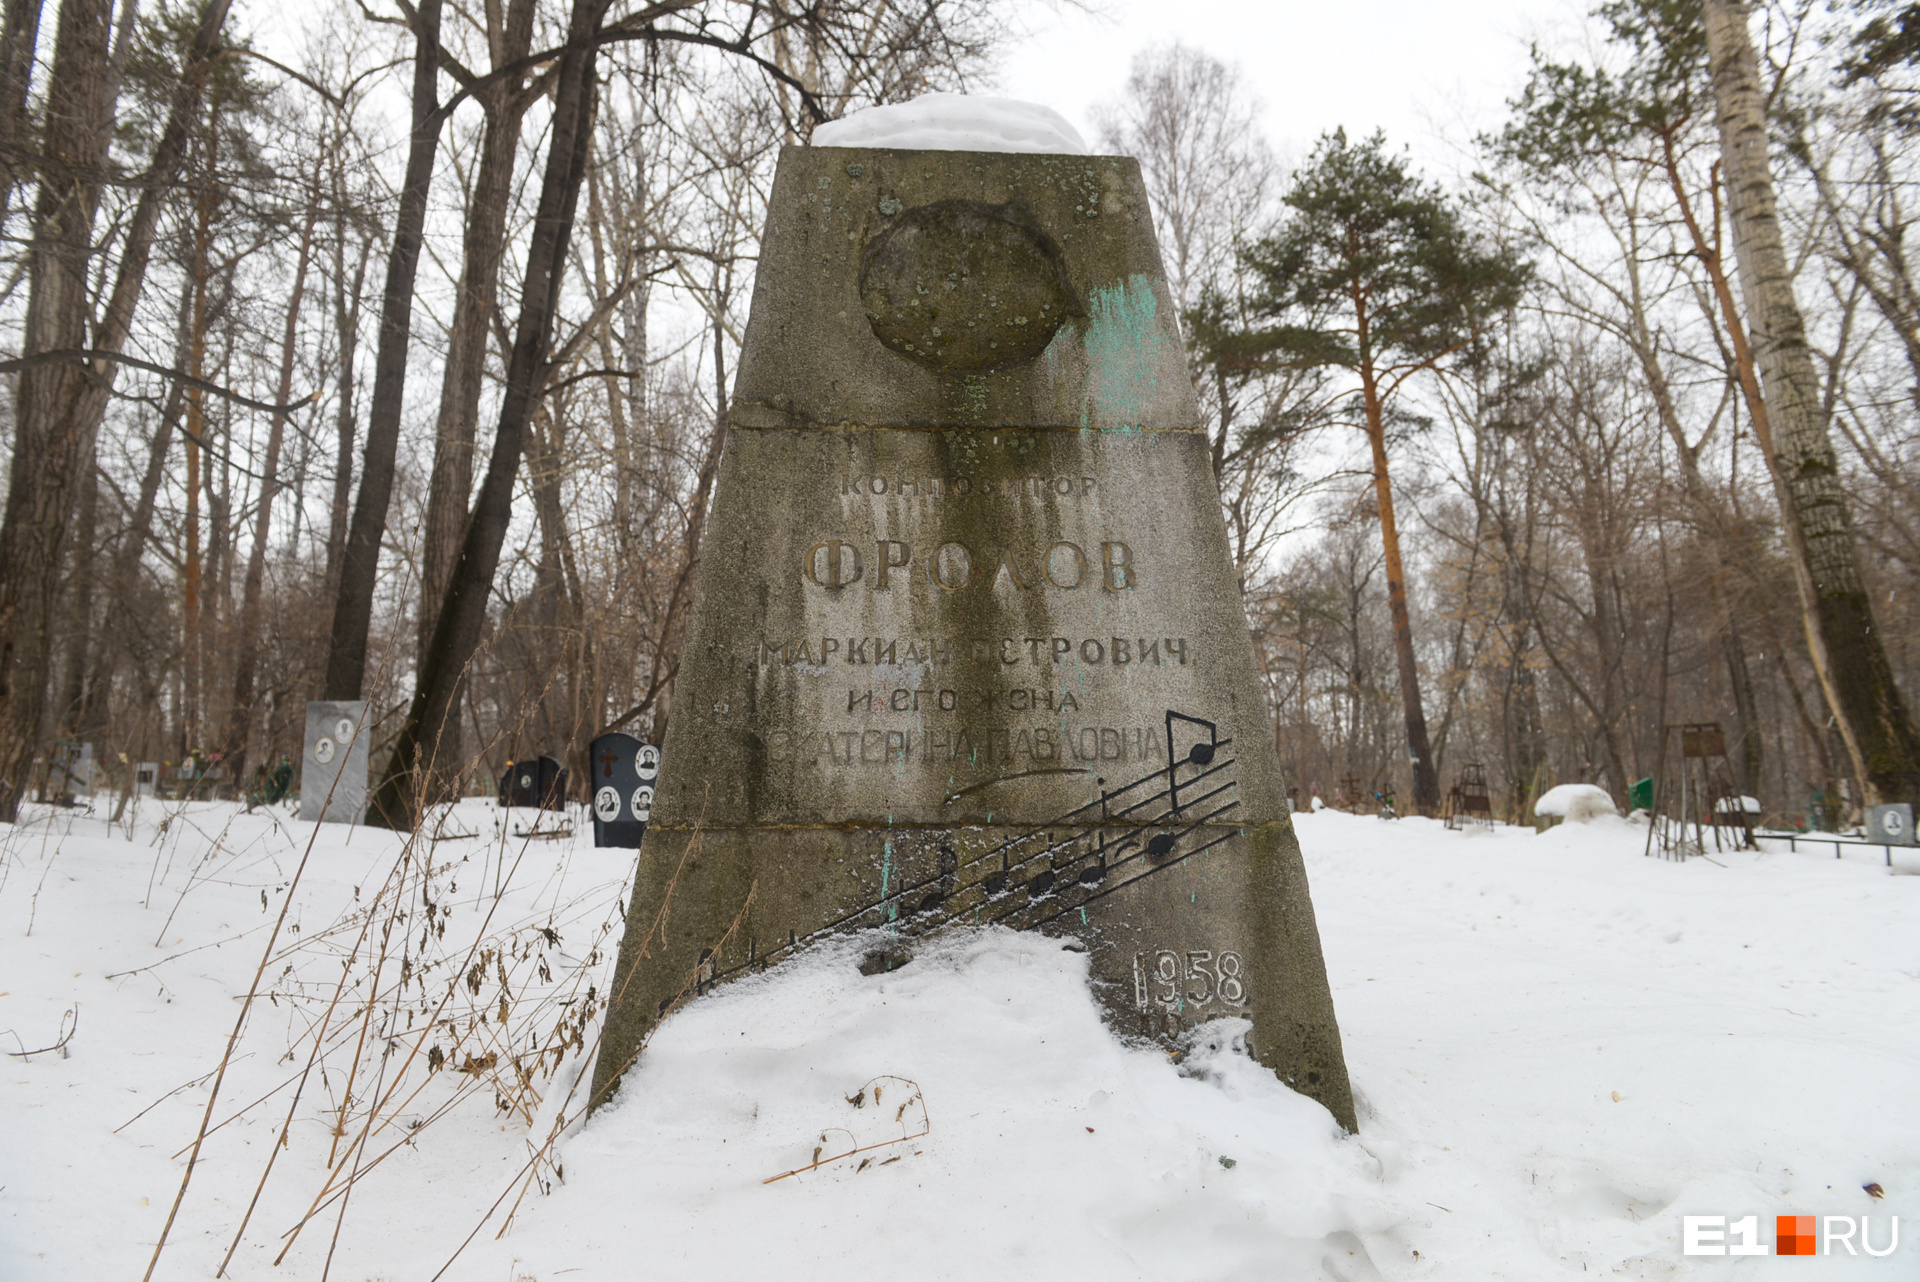 Надгробие Маркиана Фролова — одно из самых крупных на кладбище